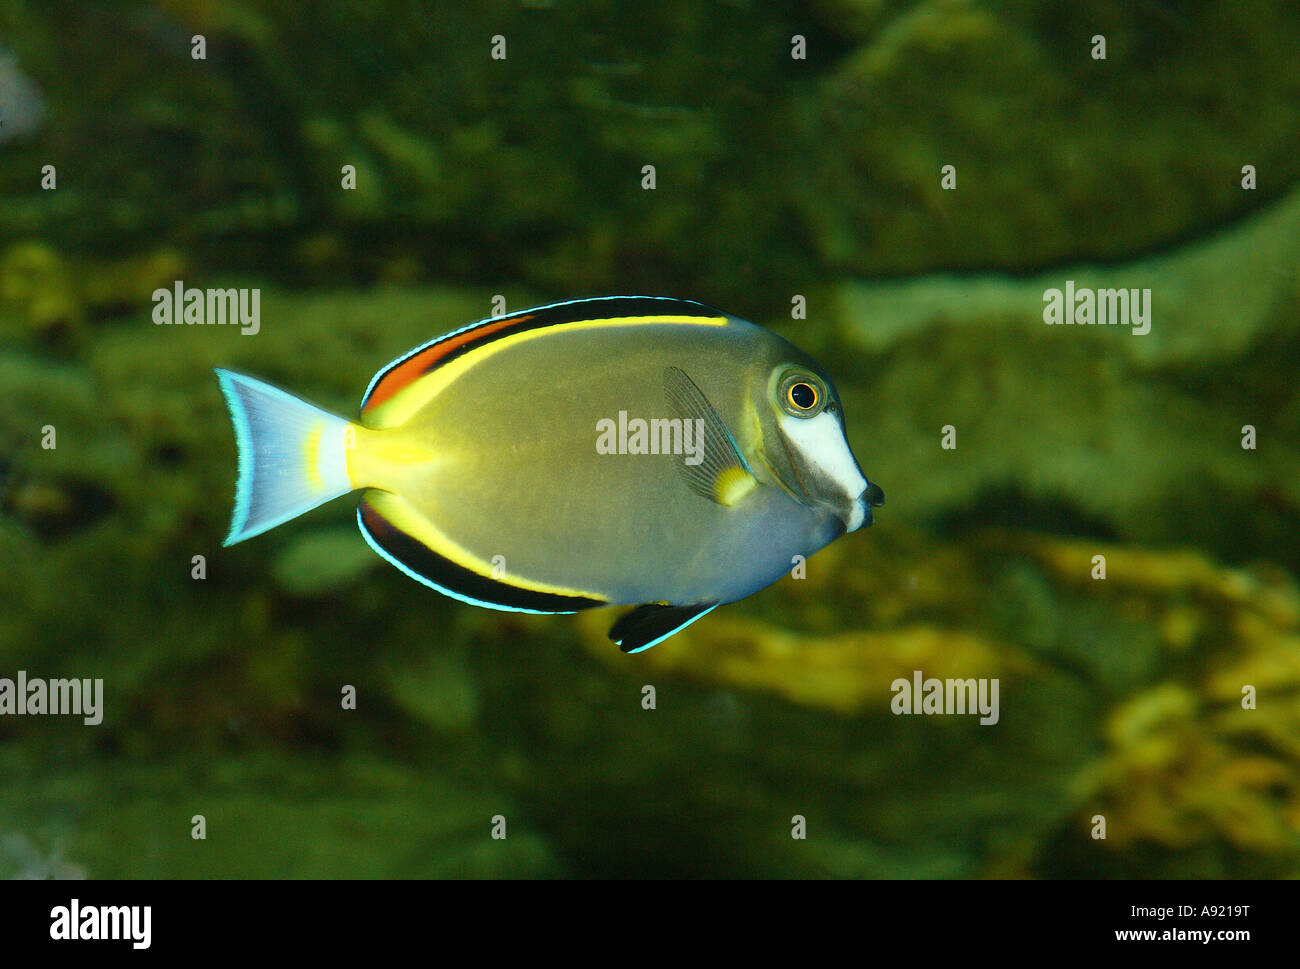 white-faced surgeonfish / Acanthurus japonicus Stock Photo